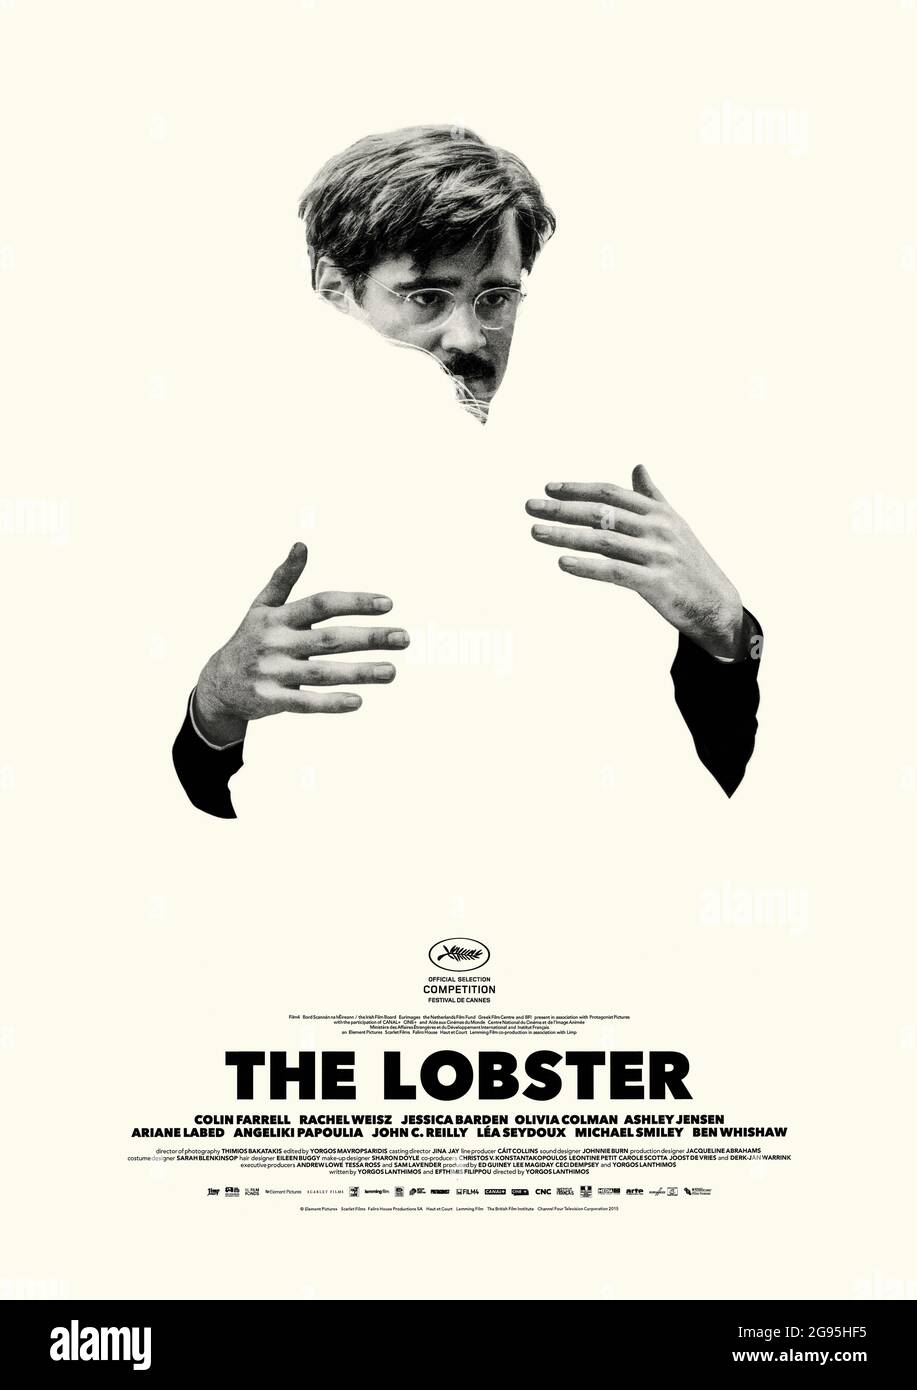 The Lobster (2015) unter der Regie von Yorgos Lanthimos mit Colin Farrell, Rachel Weisz und Jessica Barden. Surreale Komödie in einer fernen dystopischen Zukunft, in der alleinstehende Menschen 45 Tage lang einen Partner finden oder in ein Tier ihrer Wahl verwandelt werden, um im Wald zu wandern. Stockfoto